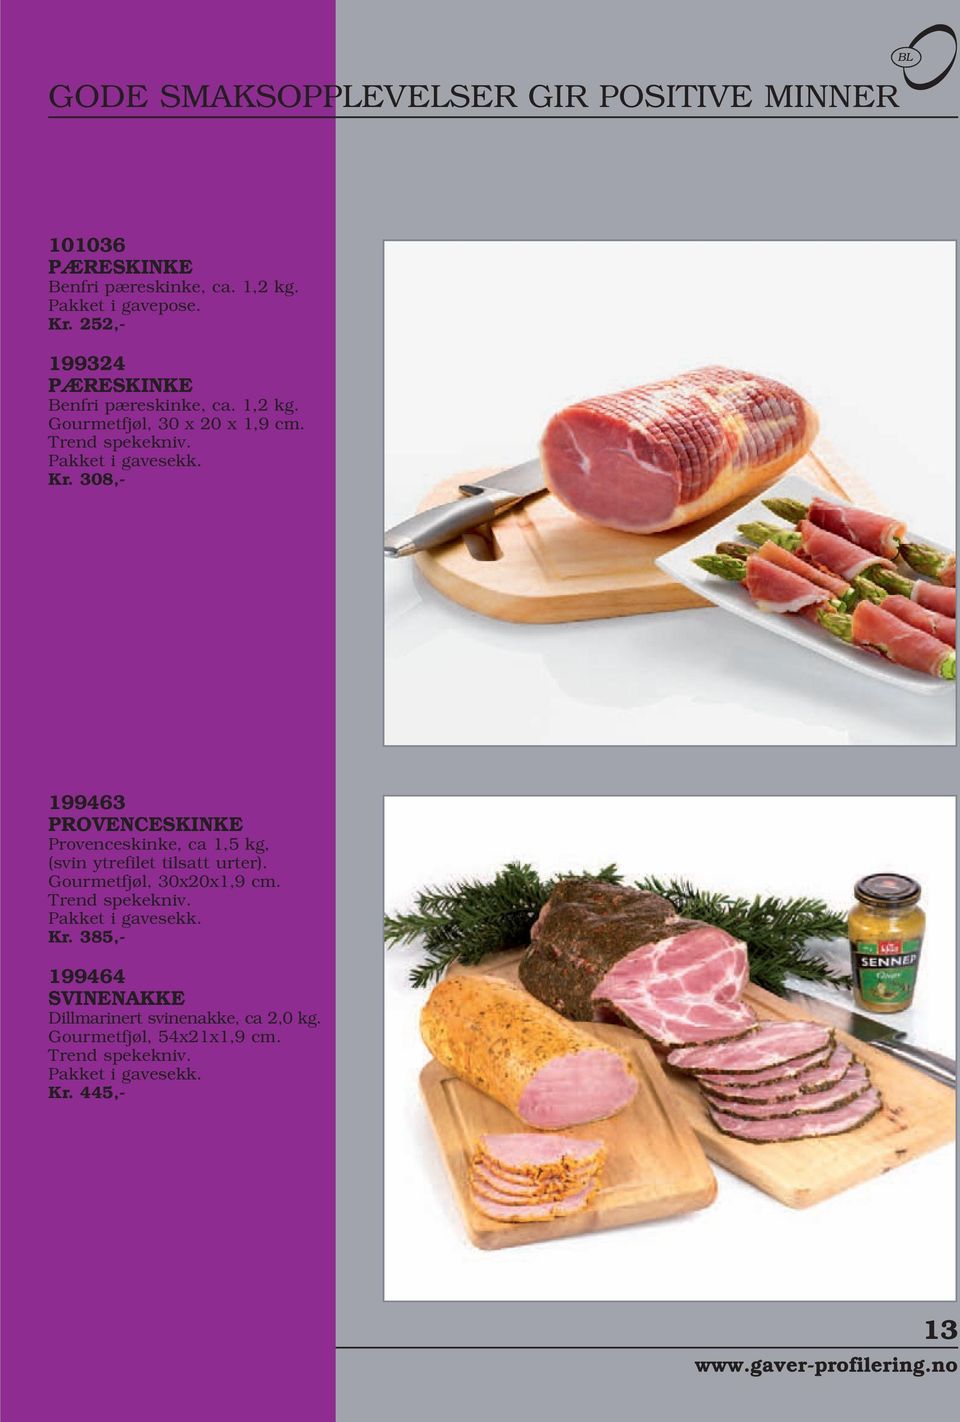 308,- 199463 PROVENCESKINKE Provenceskinke, ca 1,5 kg, (svin ytrefilet tilsatt urter). Gourmetfjøl, 30x20x1,9 cm. Trend spekekniv.